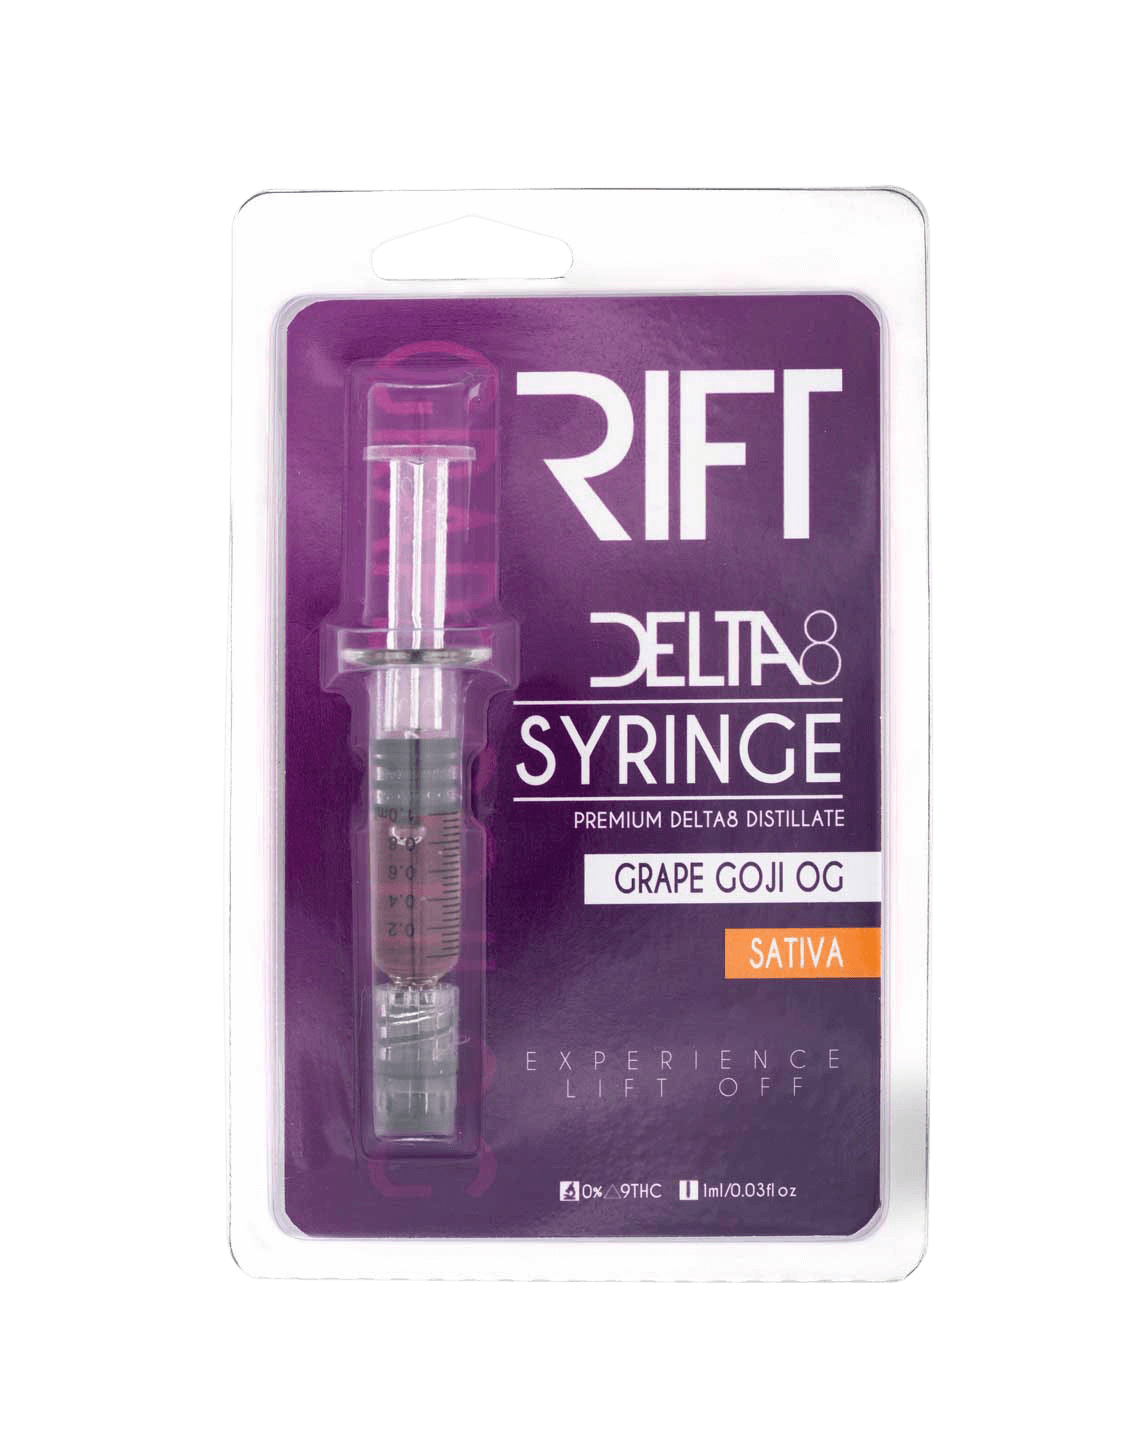 Rift Delta 8 THC Distillate Syringe » My Delta Eight